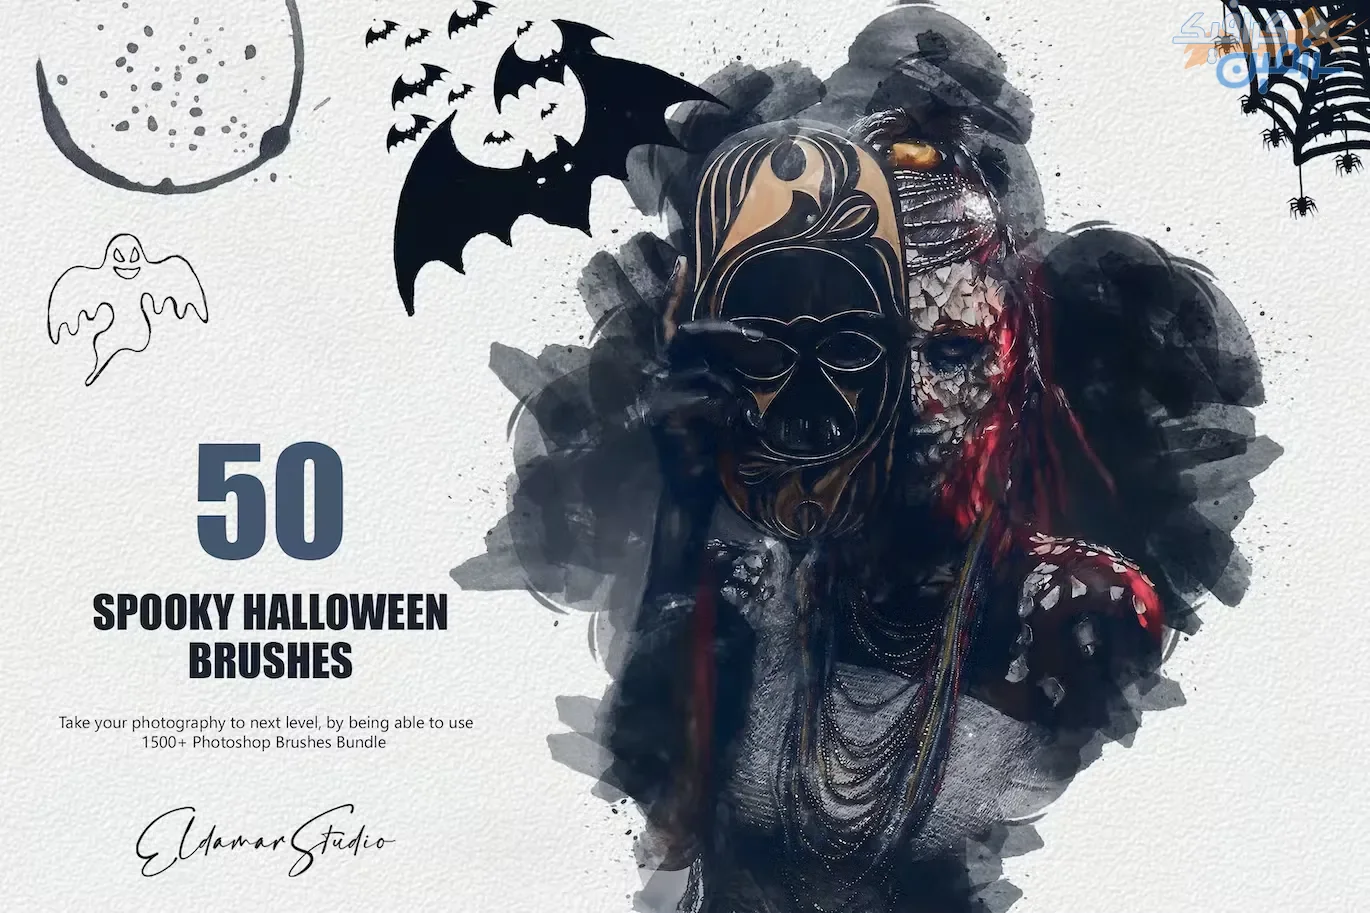 دانلود ۵۰ Spooky Halloween Brushes – مجموعه ۵۰ براش هالووینی